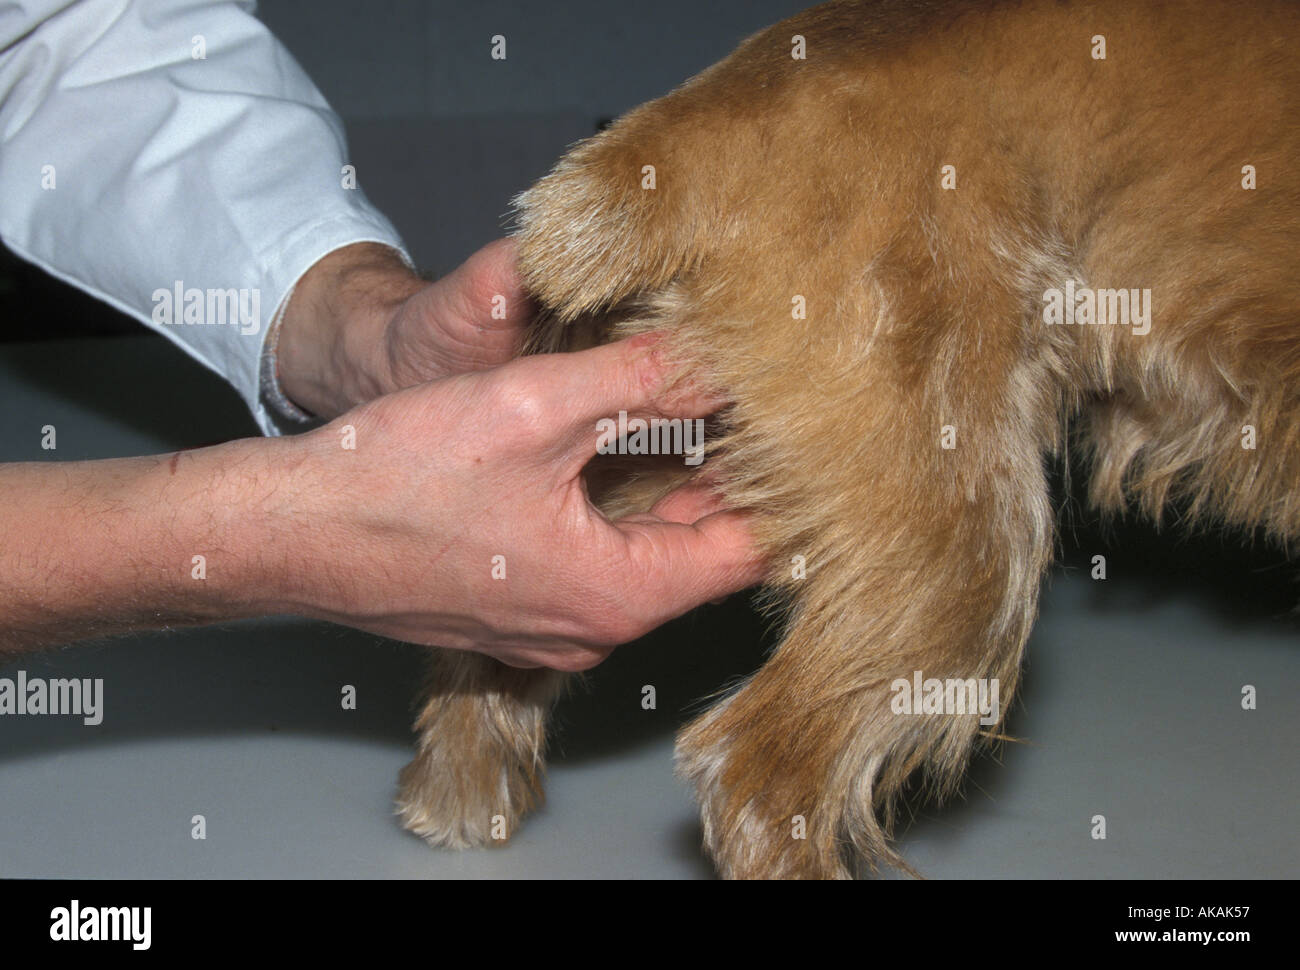 Inländischen Überprüfung des Hundes Genitalien Hund Stockfoto